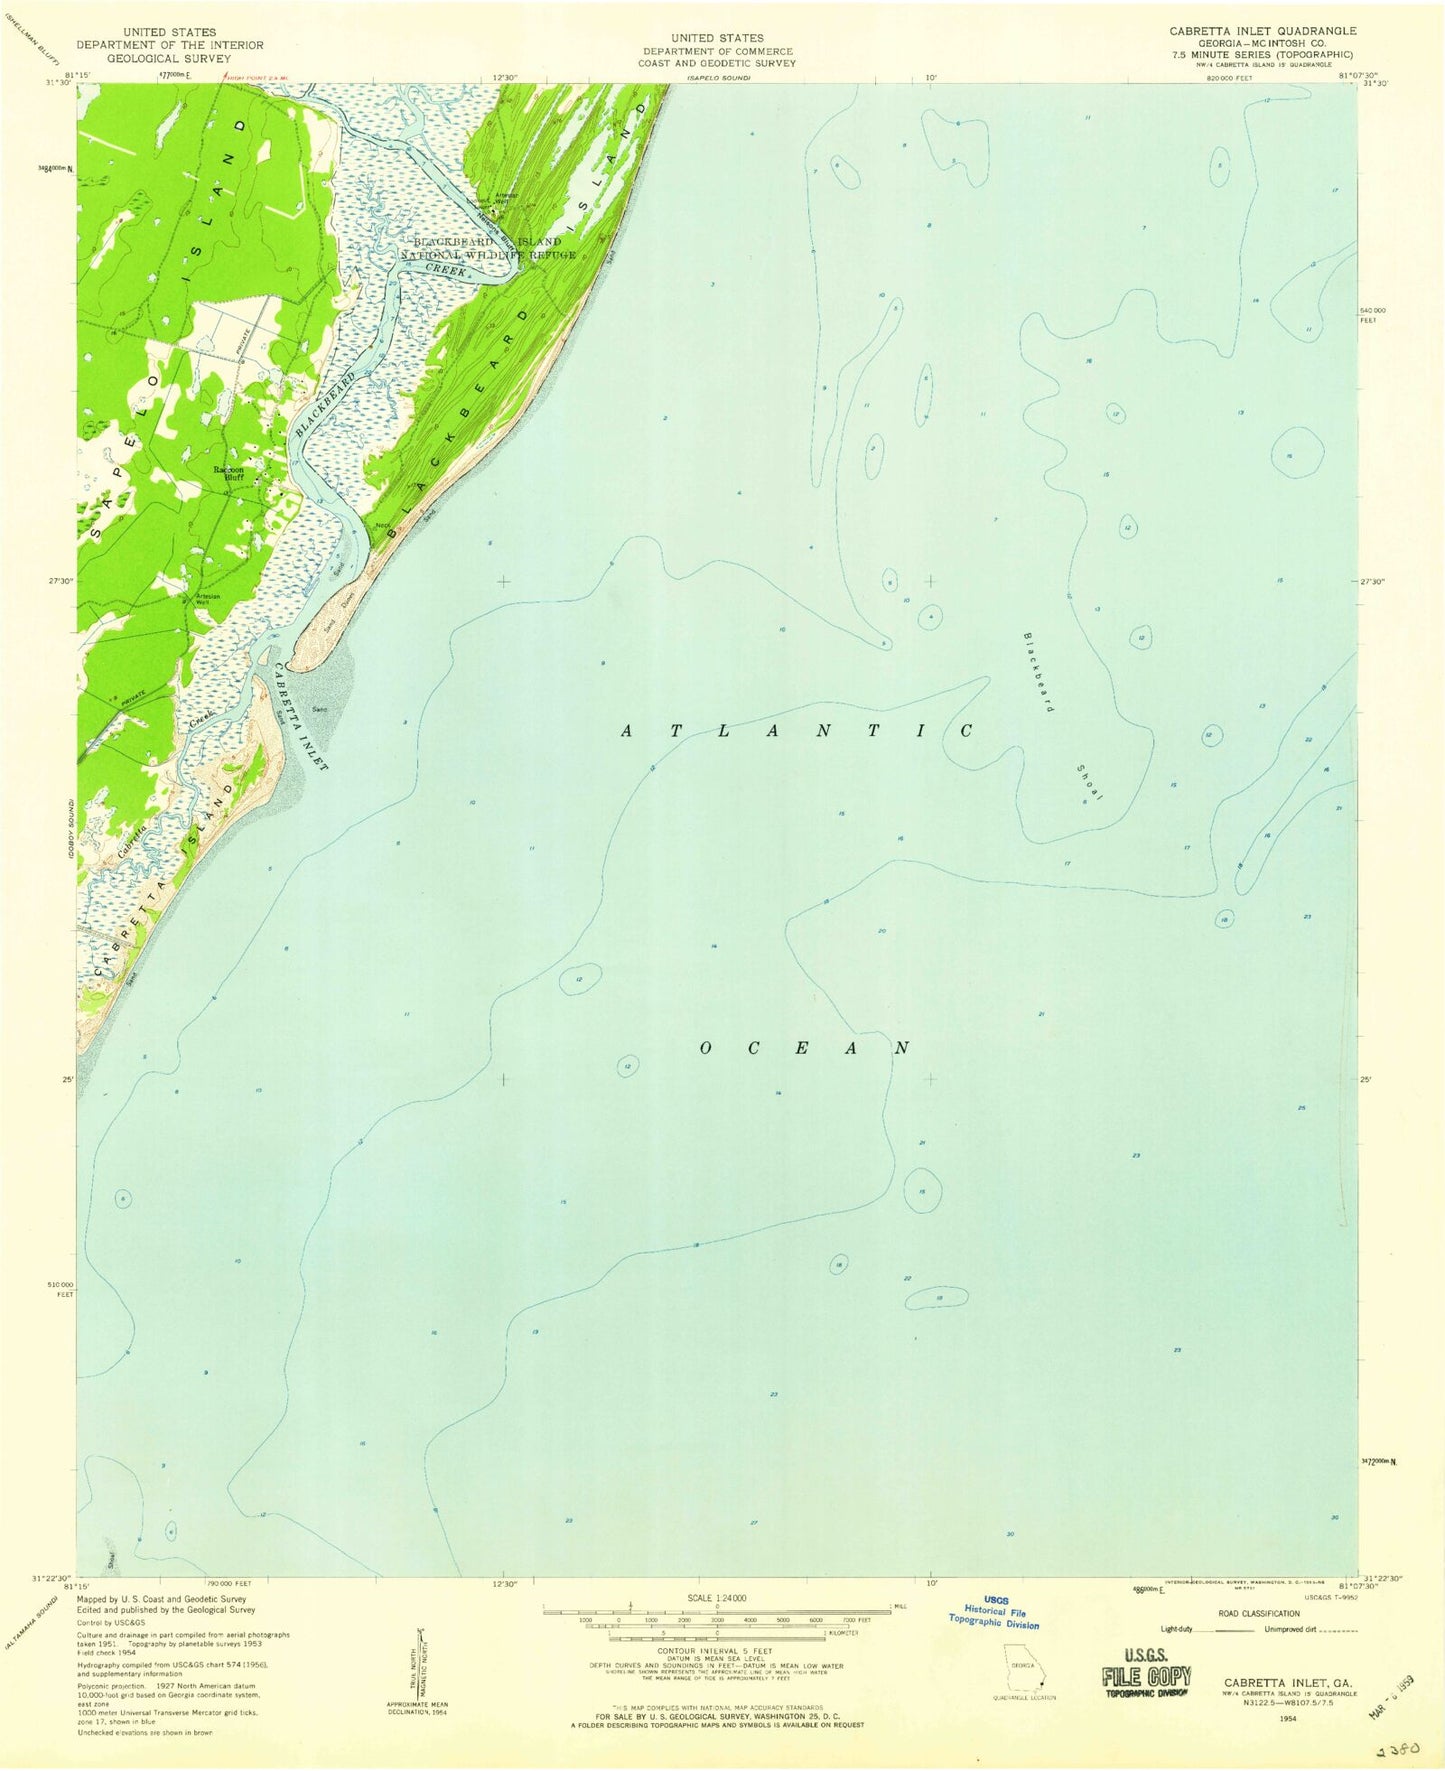 Classic USGS Cabretta Inlet Georgia 7.5'x7.5' Topo Map Image